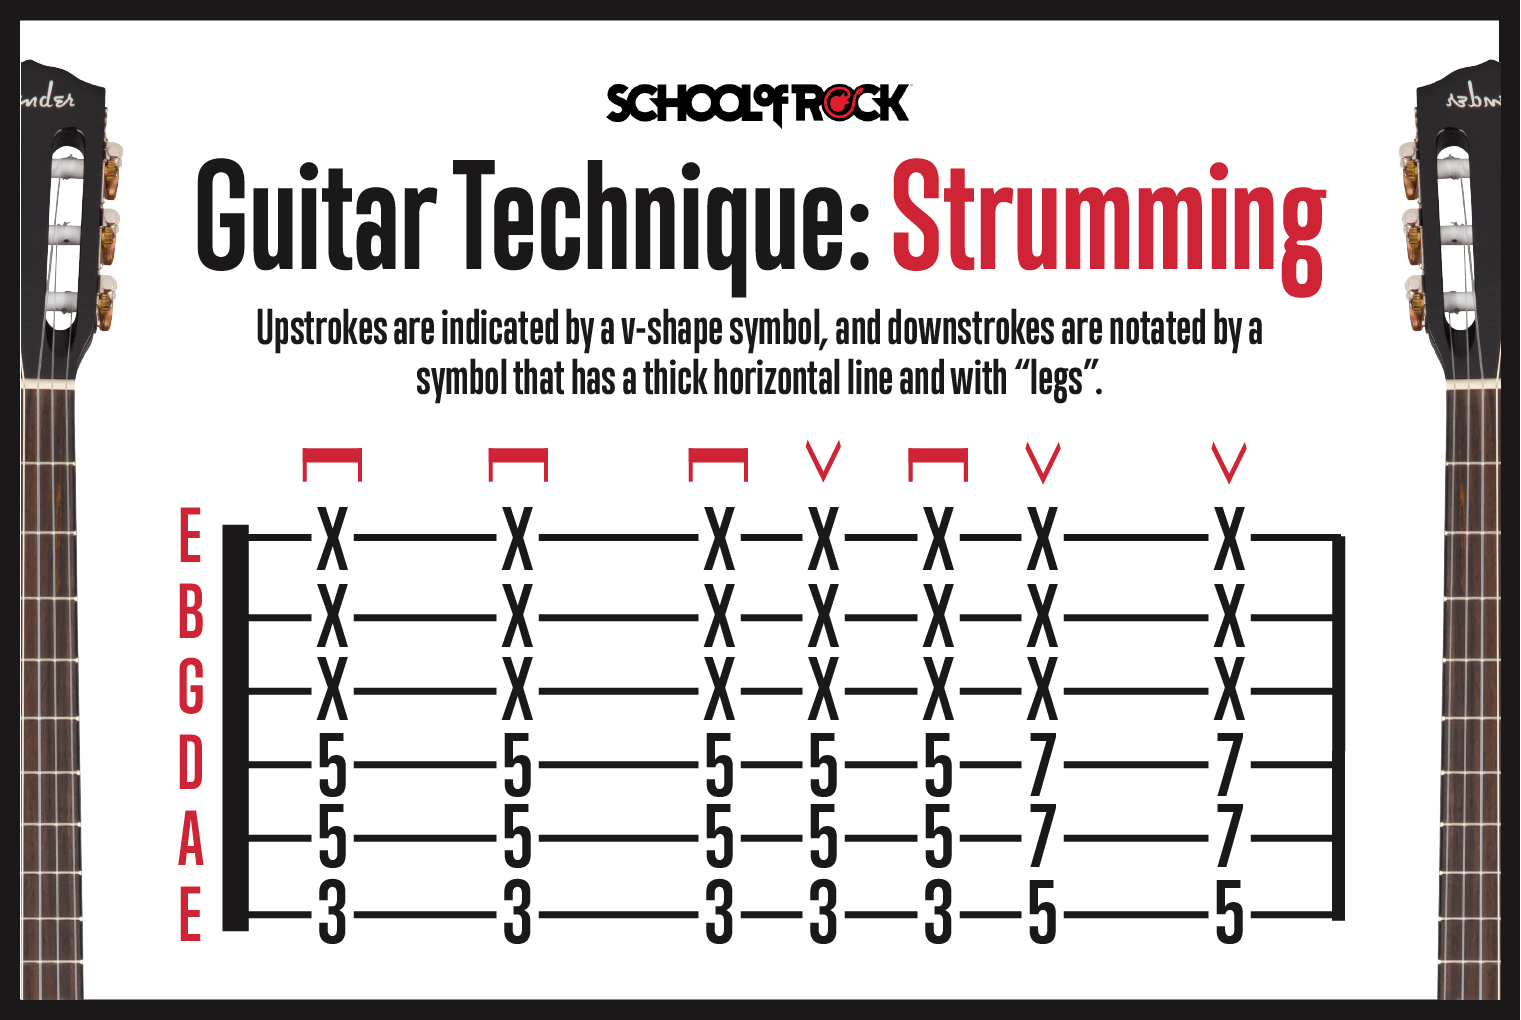 Guitar technique strumming